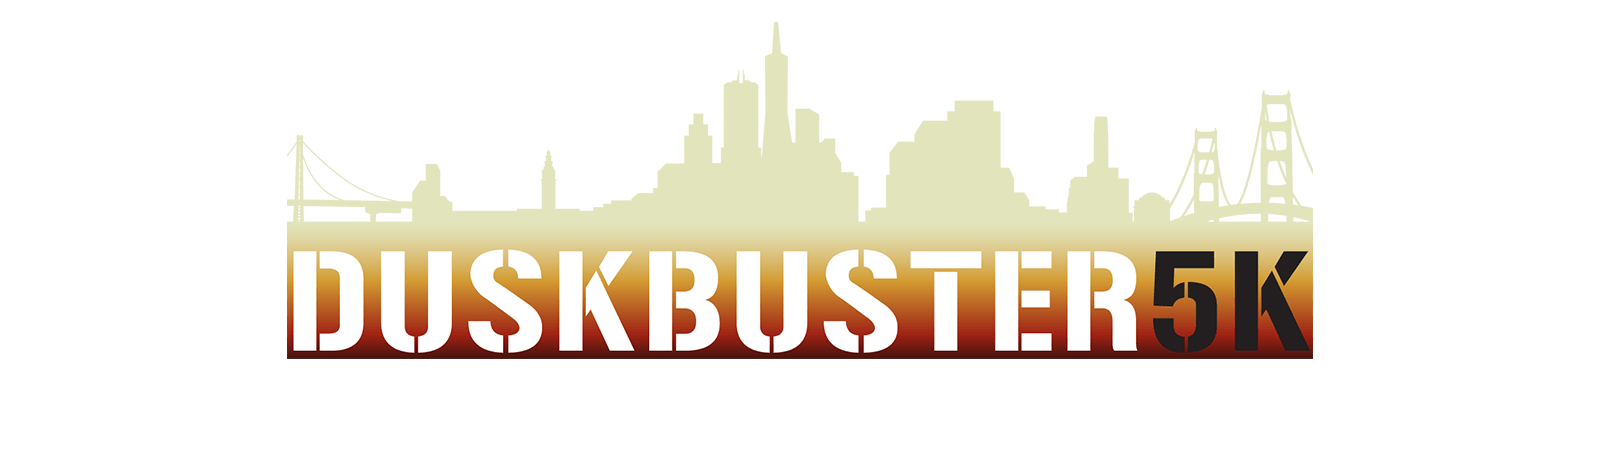 Duskbuster logo